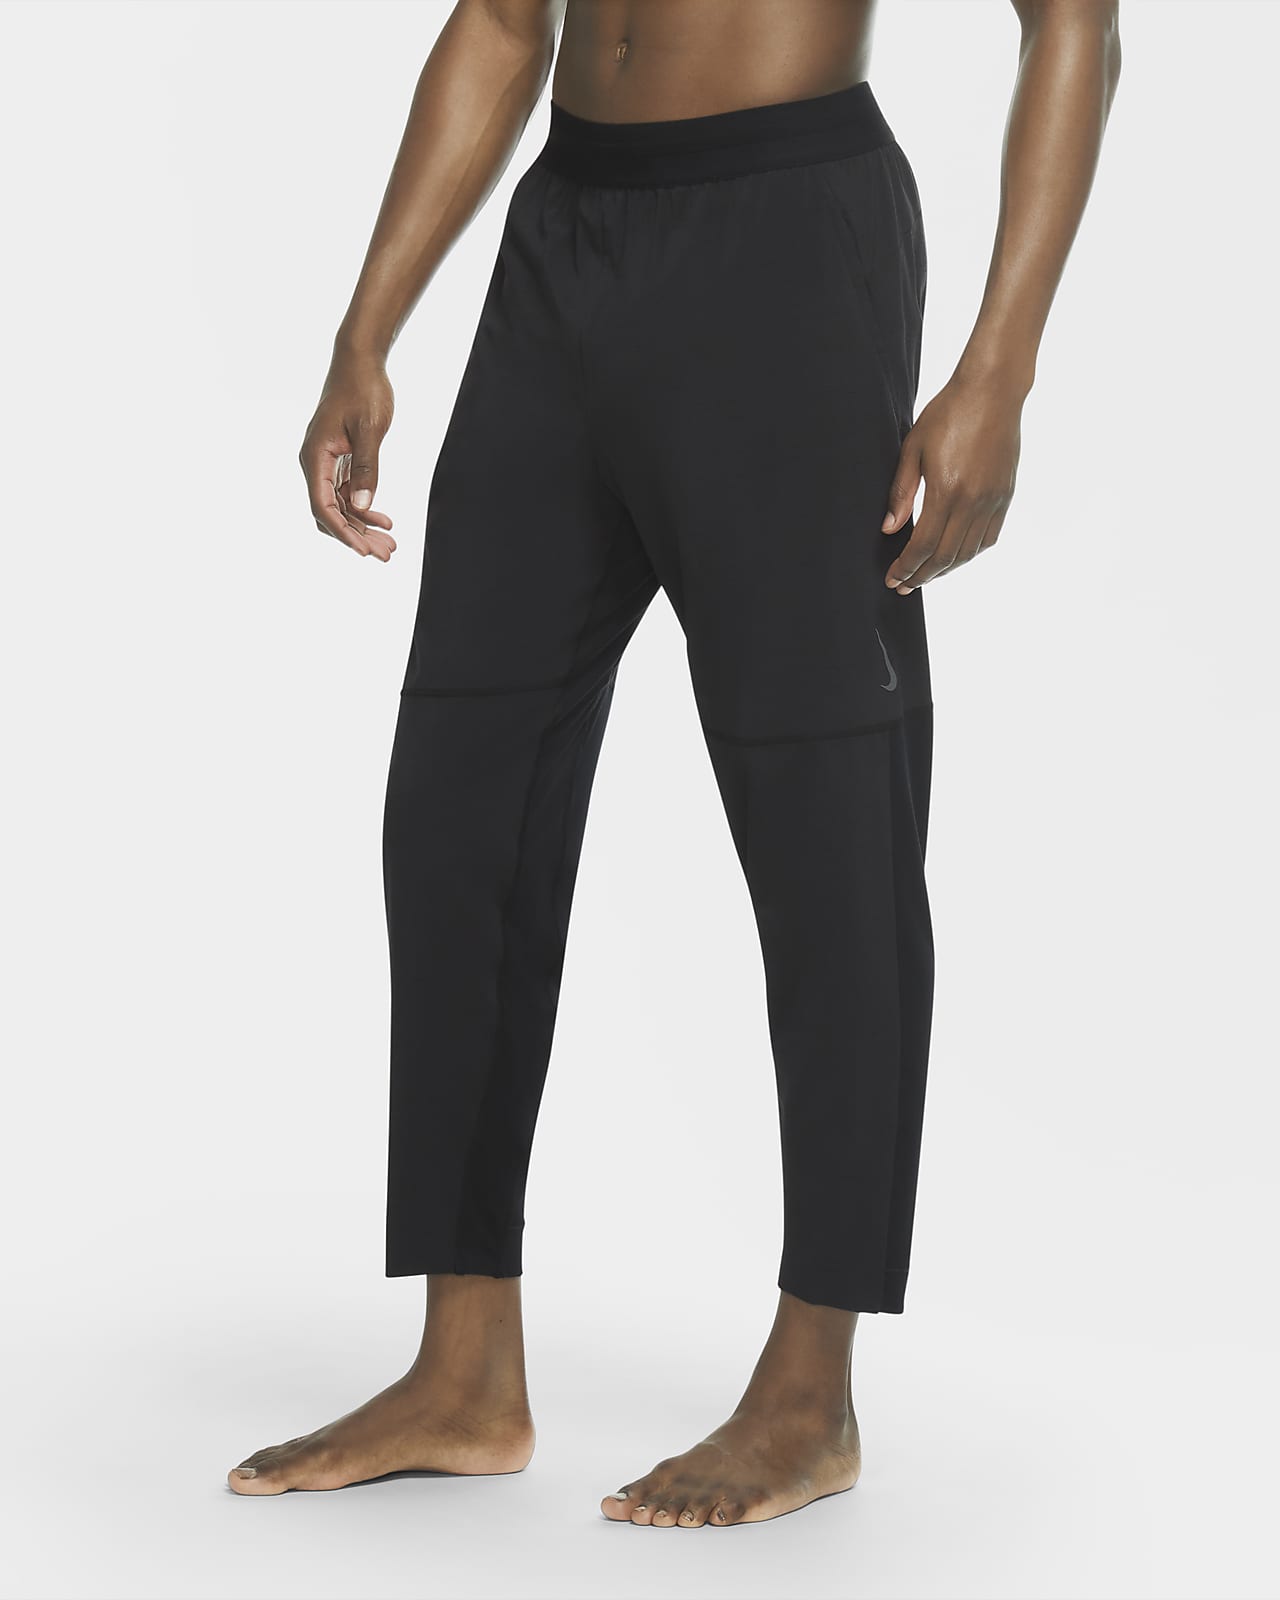 Buy > nike dri fit men's yoga pants > in stock